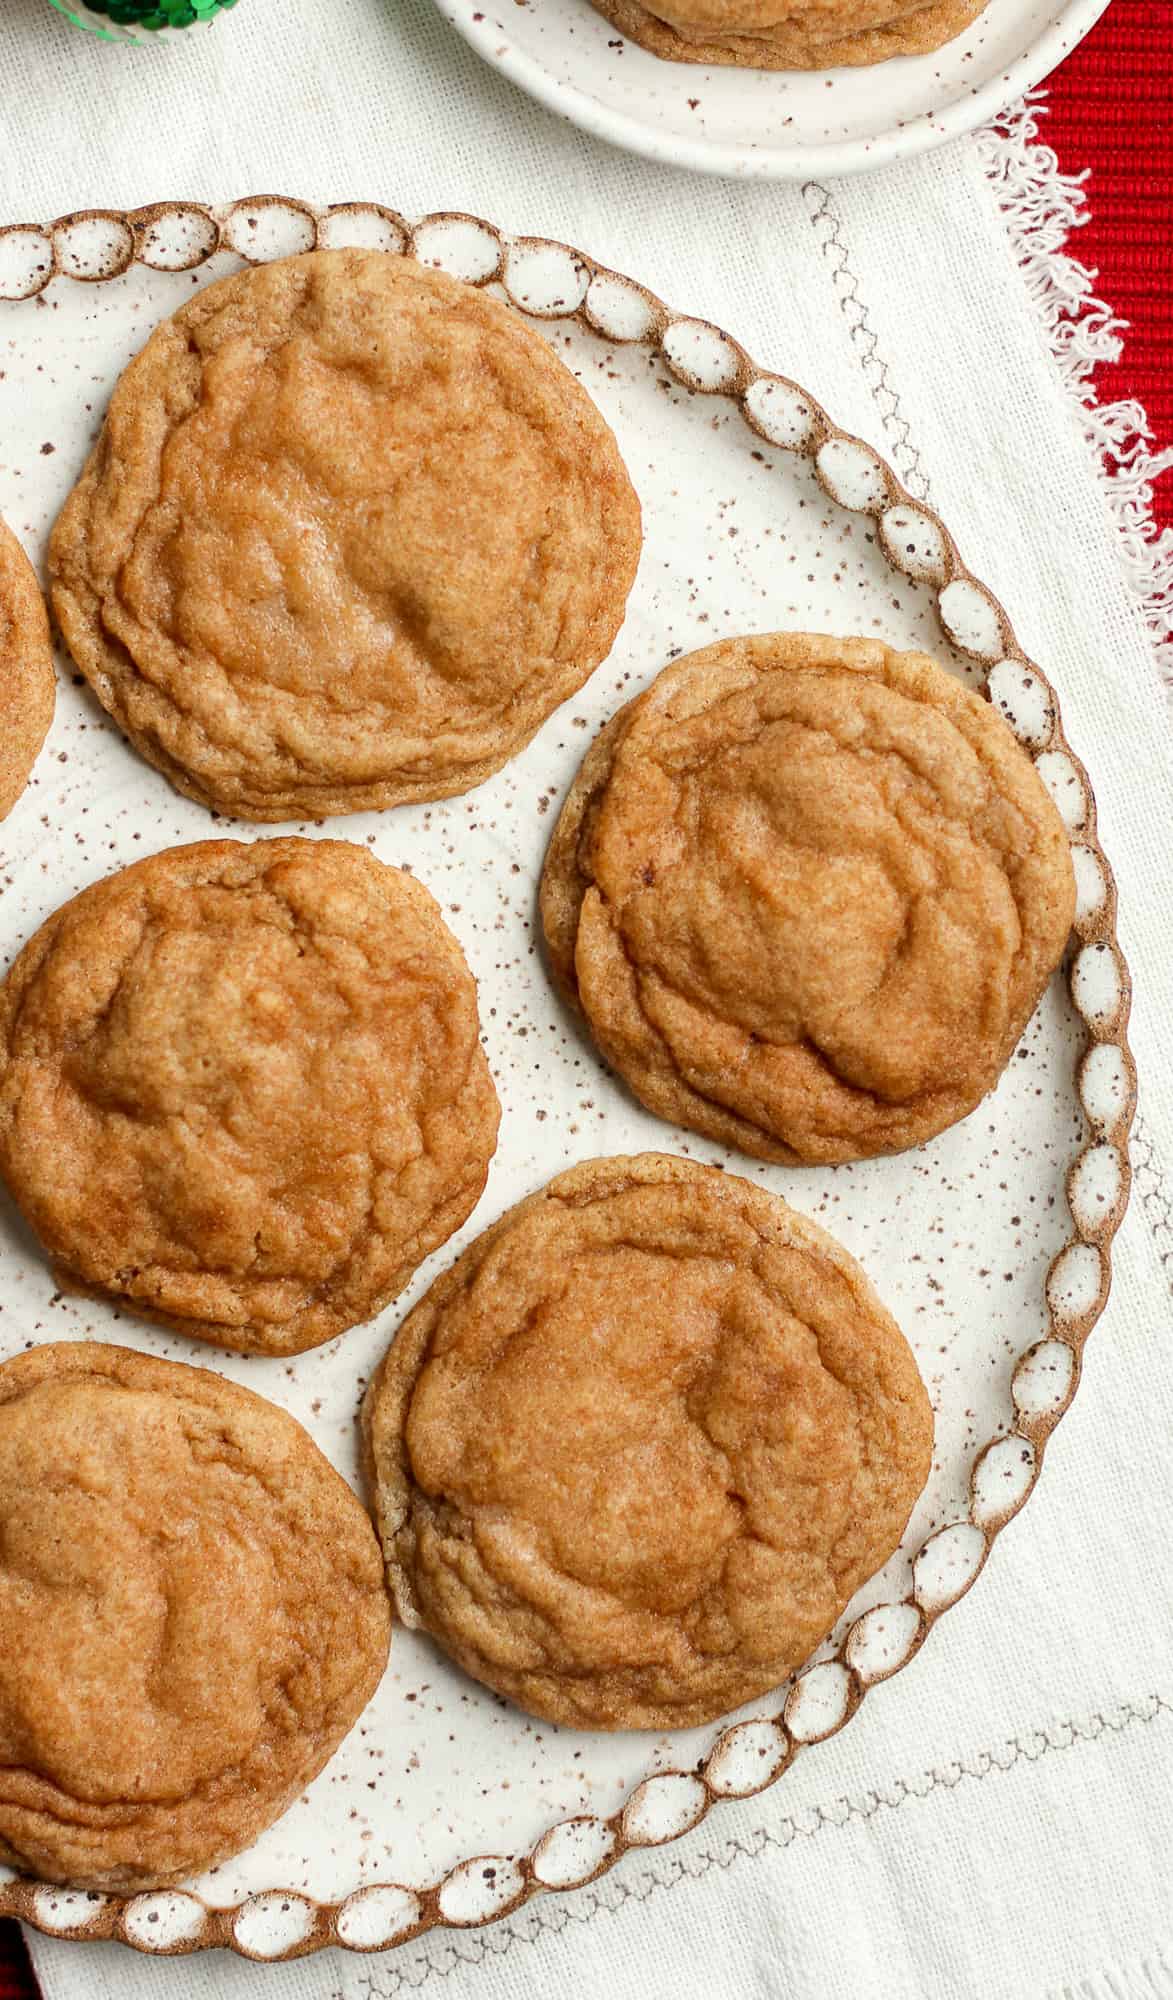 Soft Snickerdoodle Cookies